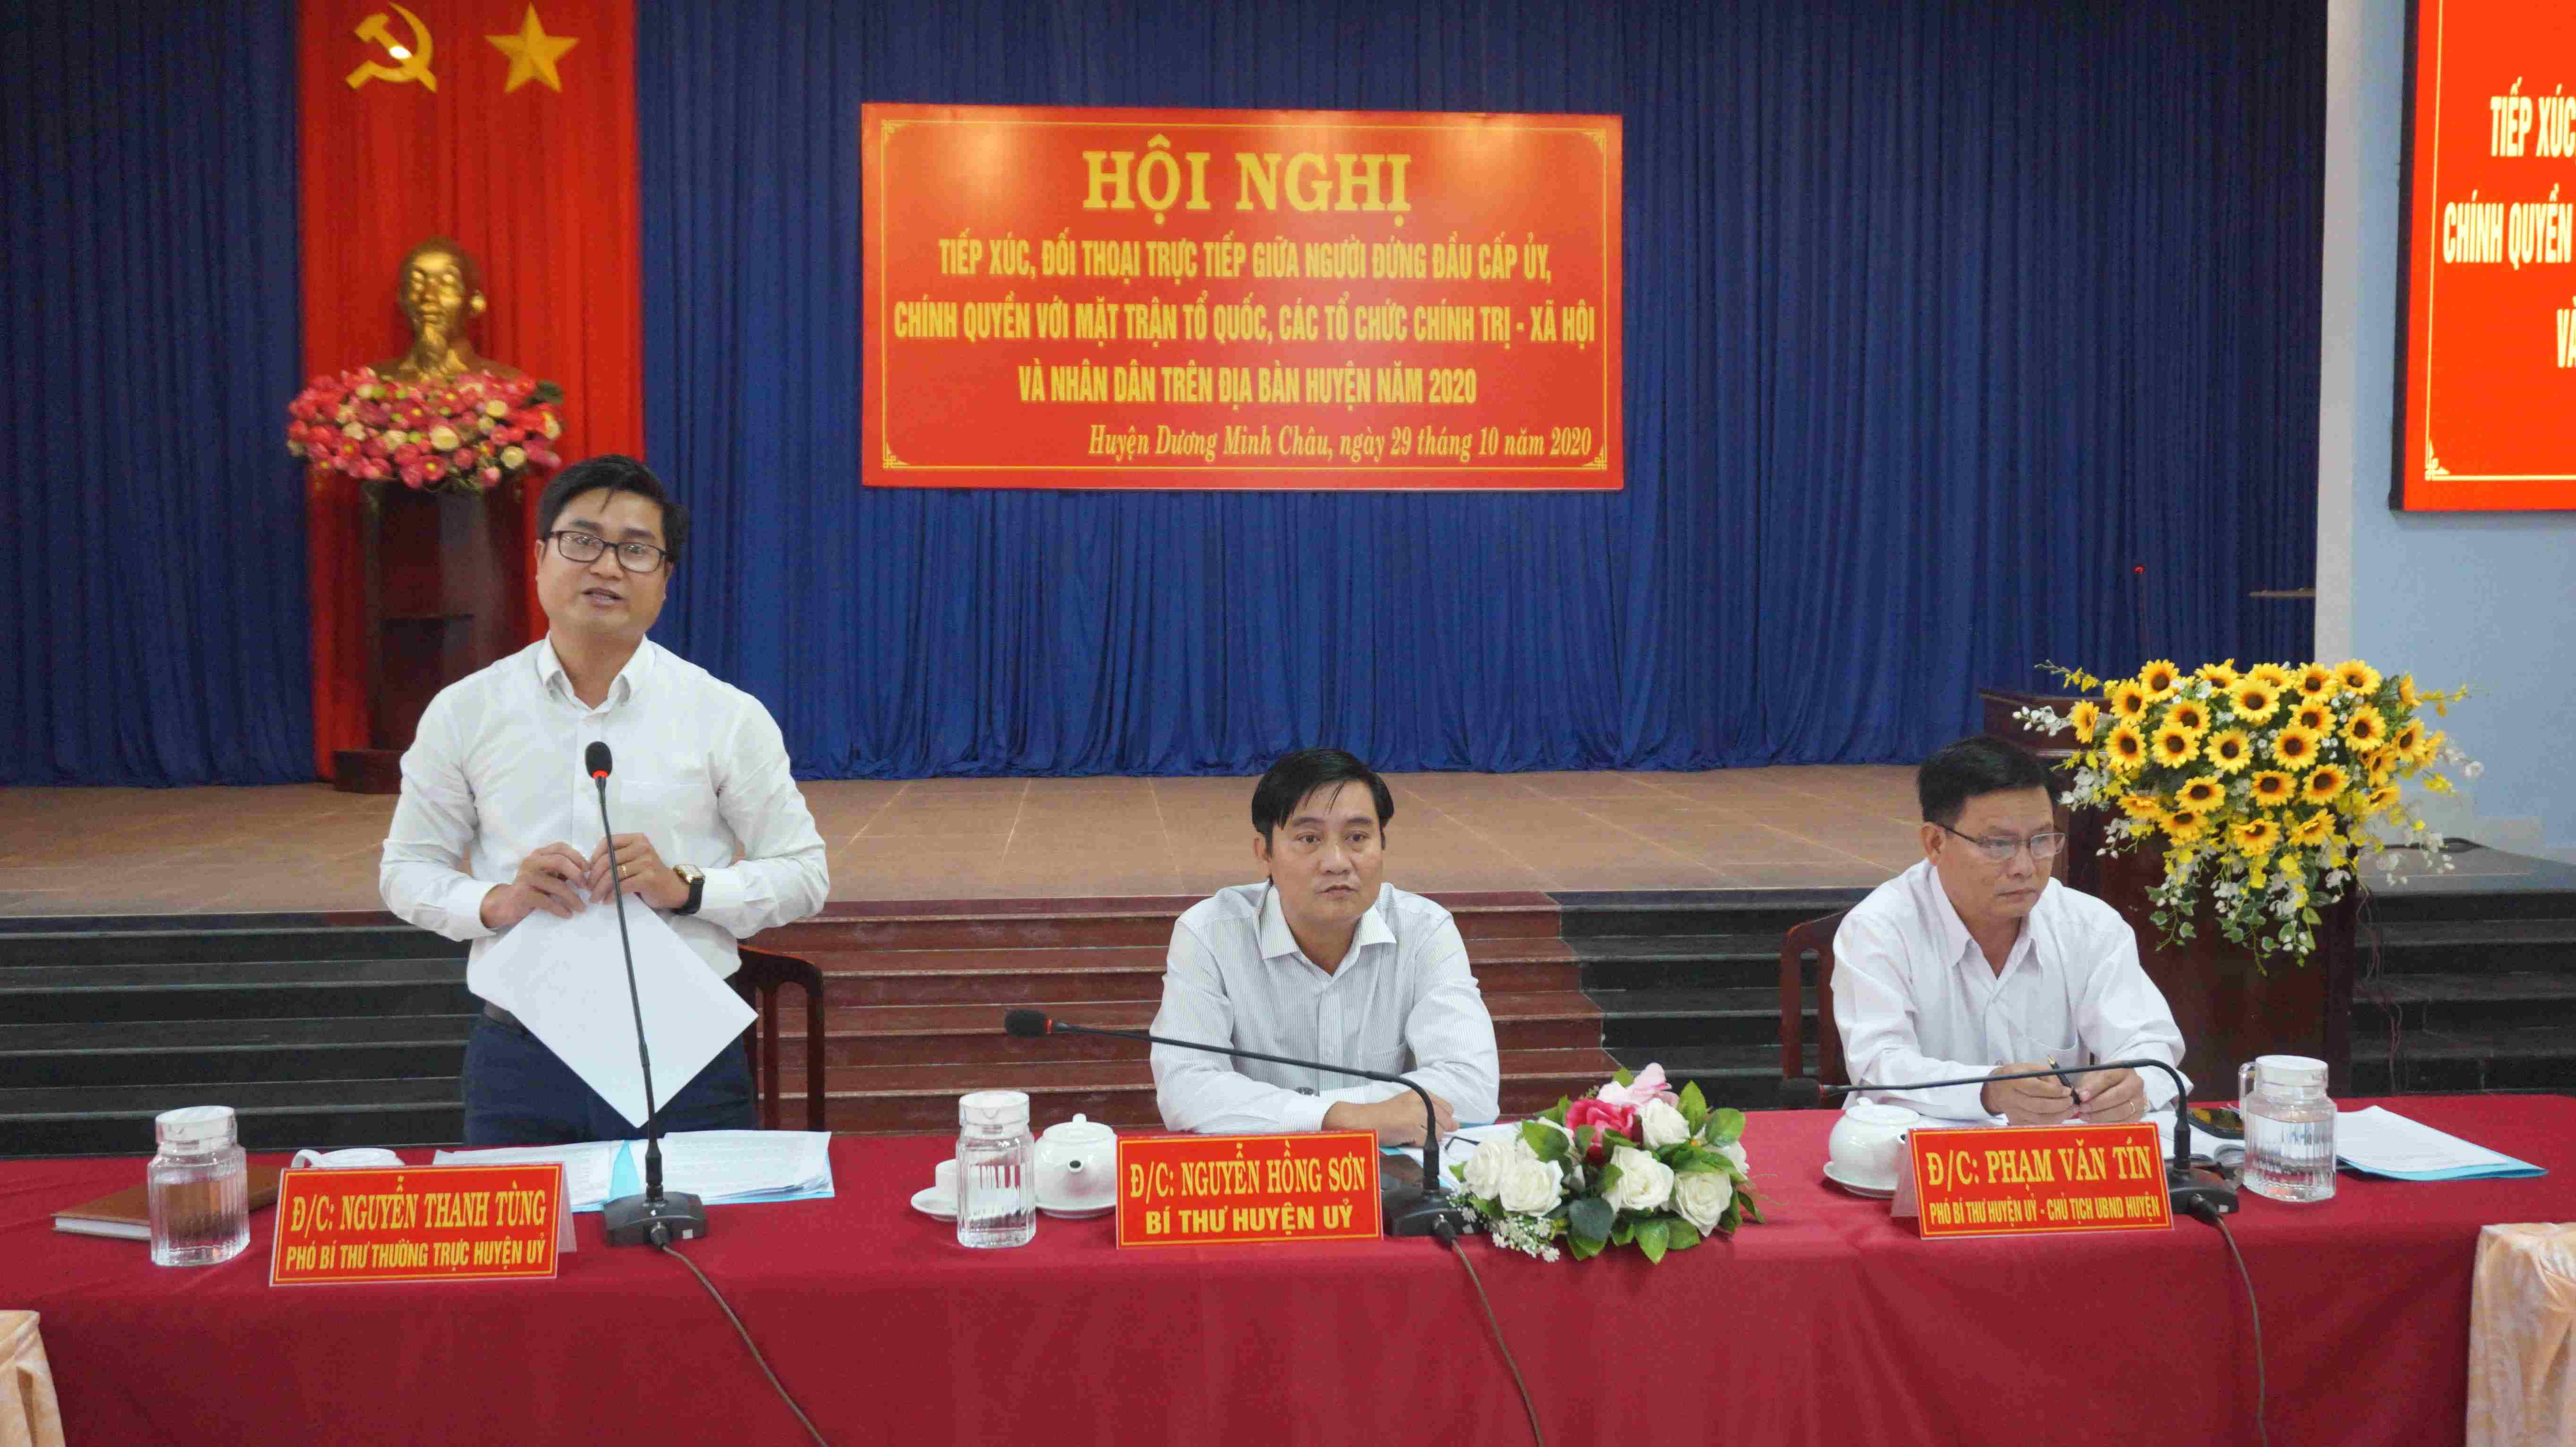 Huyện Dương Minh Châu:  Tổ chức hội nghị tiếp xúc, đối thoại trực tiếp giữa người đứng đầu cấp ủy Đảng, chính quyền với MTTQ, các tổ chức chính trị - xã hội và nhân dân